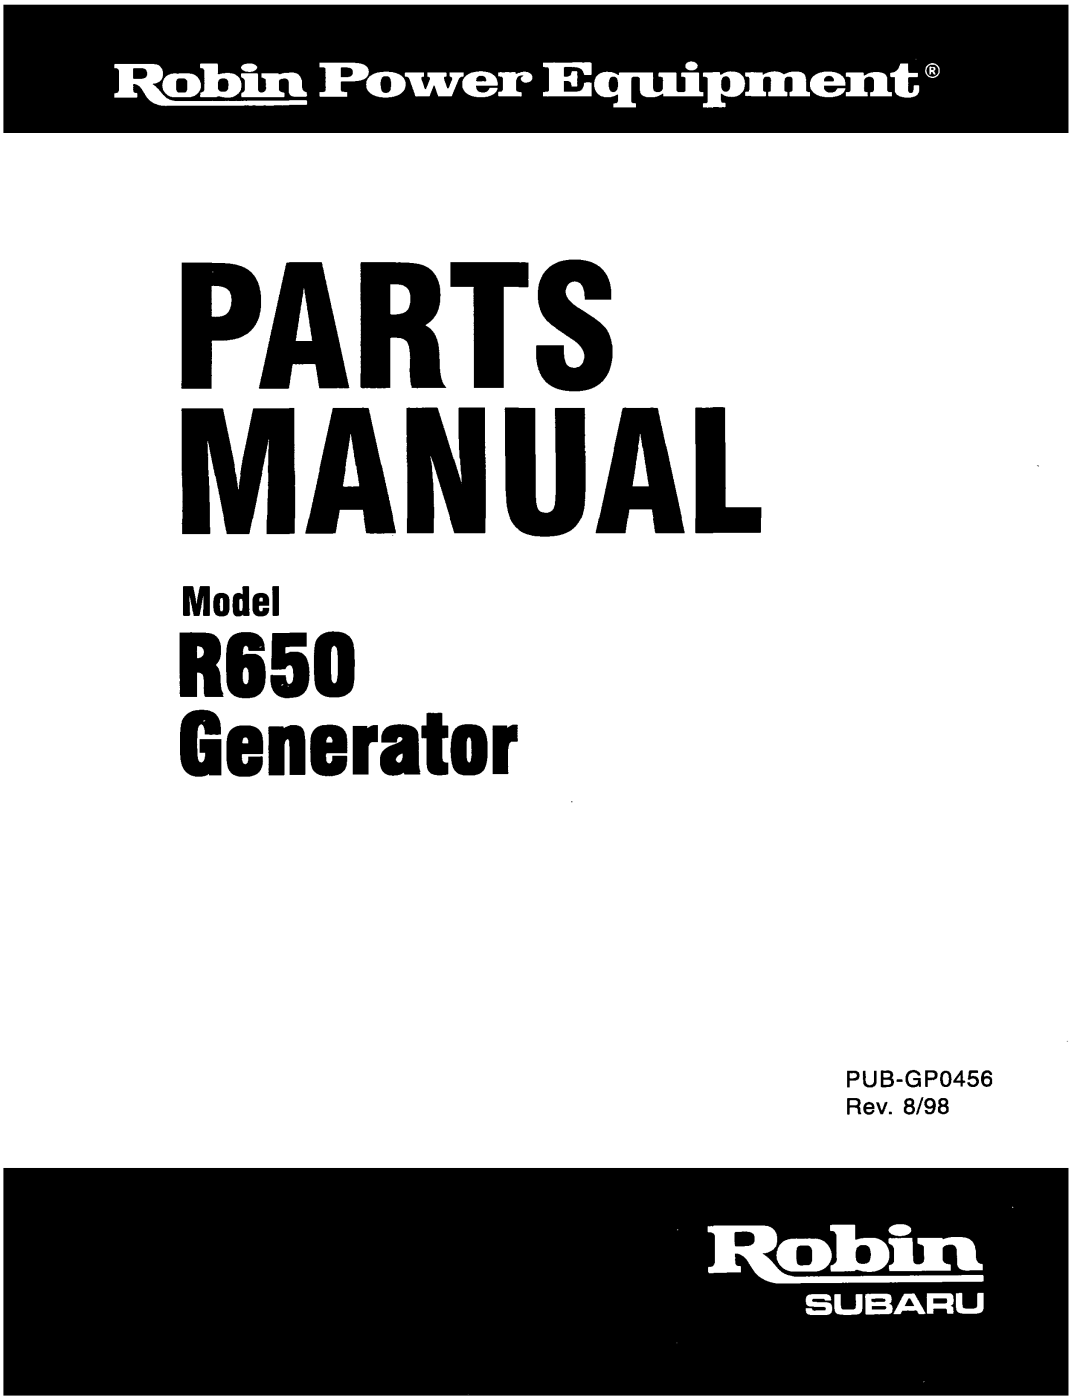 Subaru Robin Power Products R650 manual Parts Manual, Generator, Model 